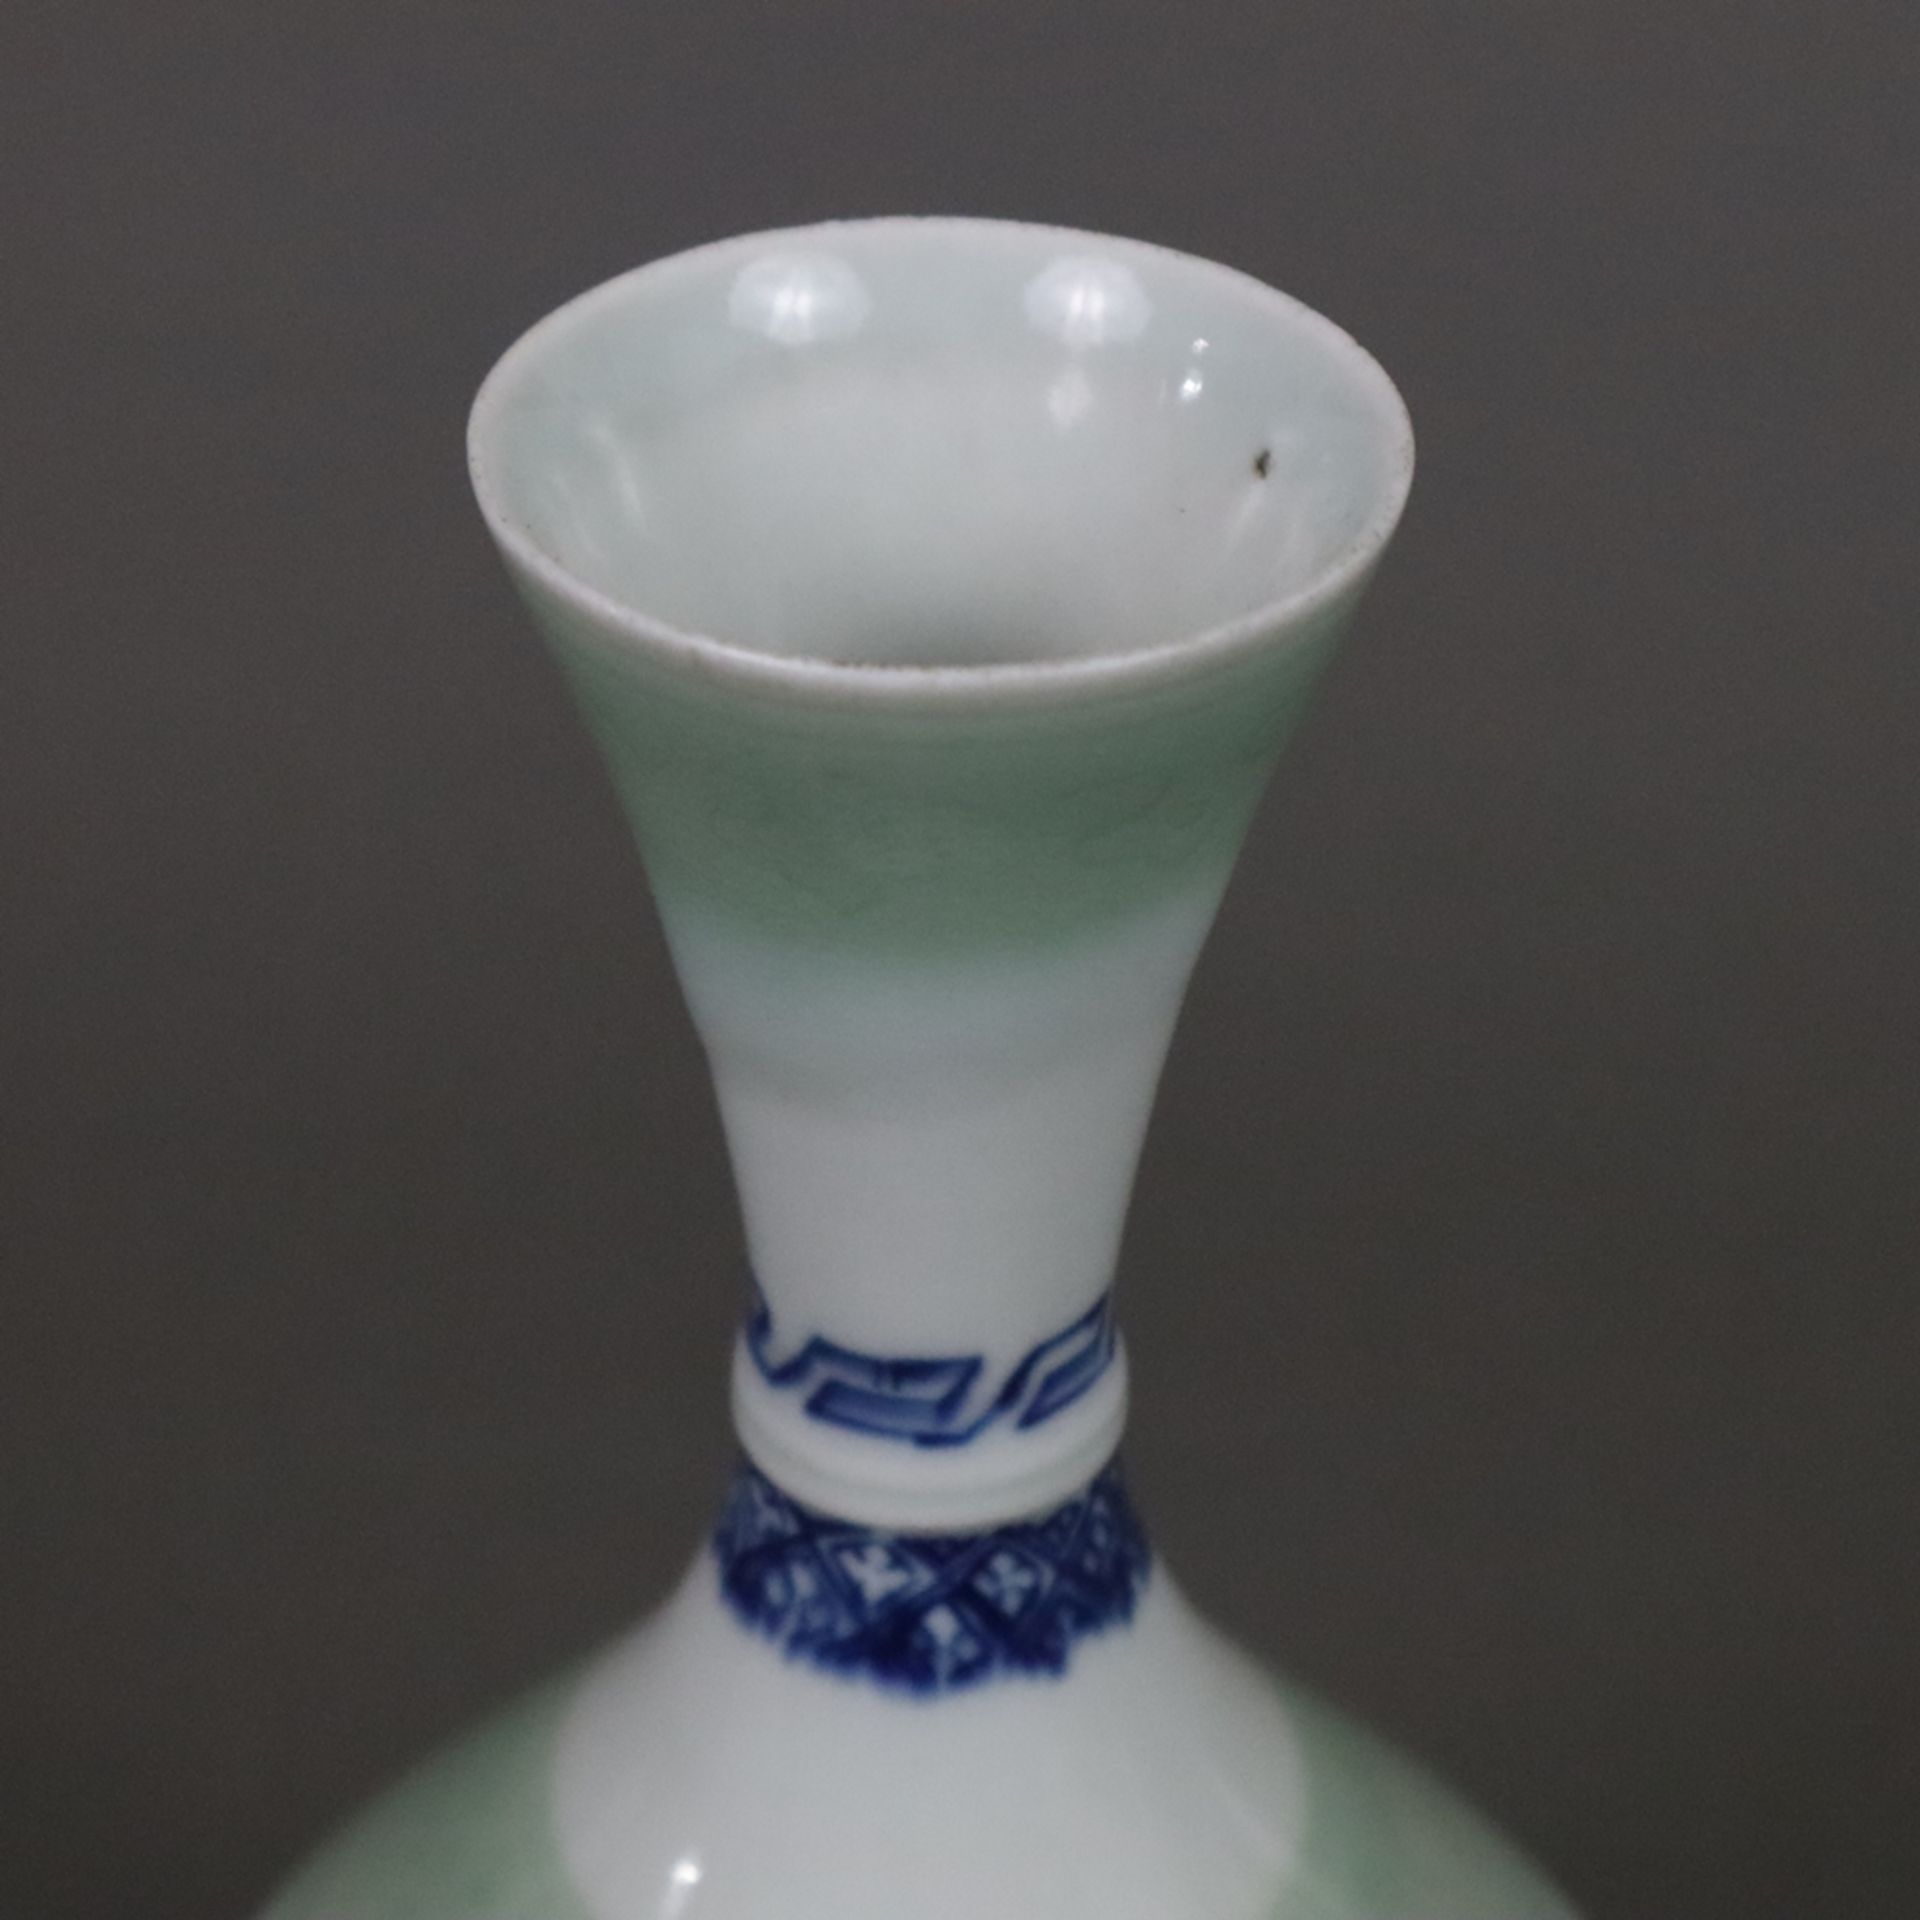 Flaschenvase - China, vom Typ „Yuhuchun“, zierliche blau-weiße Porzellanvase mit birnenförmigem Kör - Bild 2 aus 8